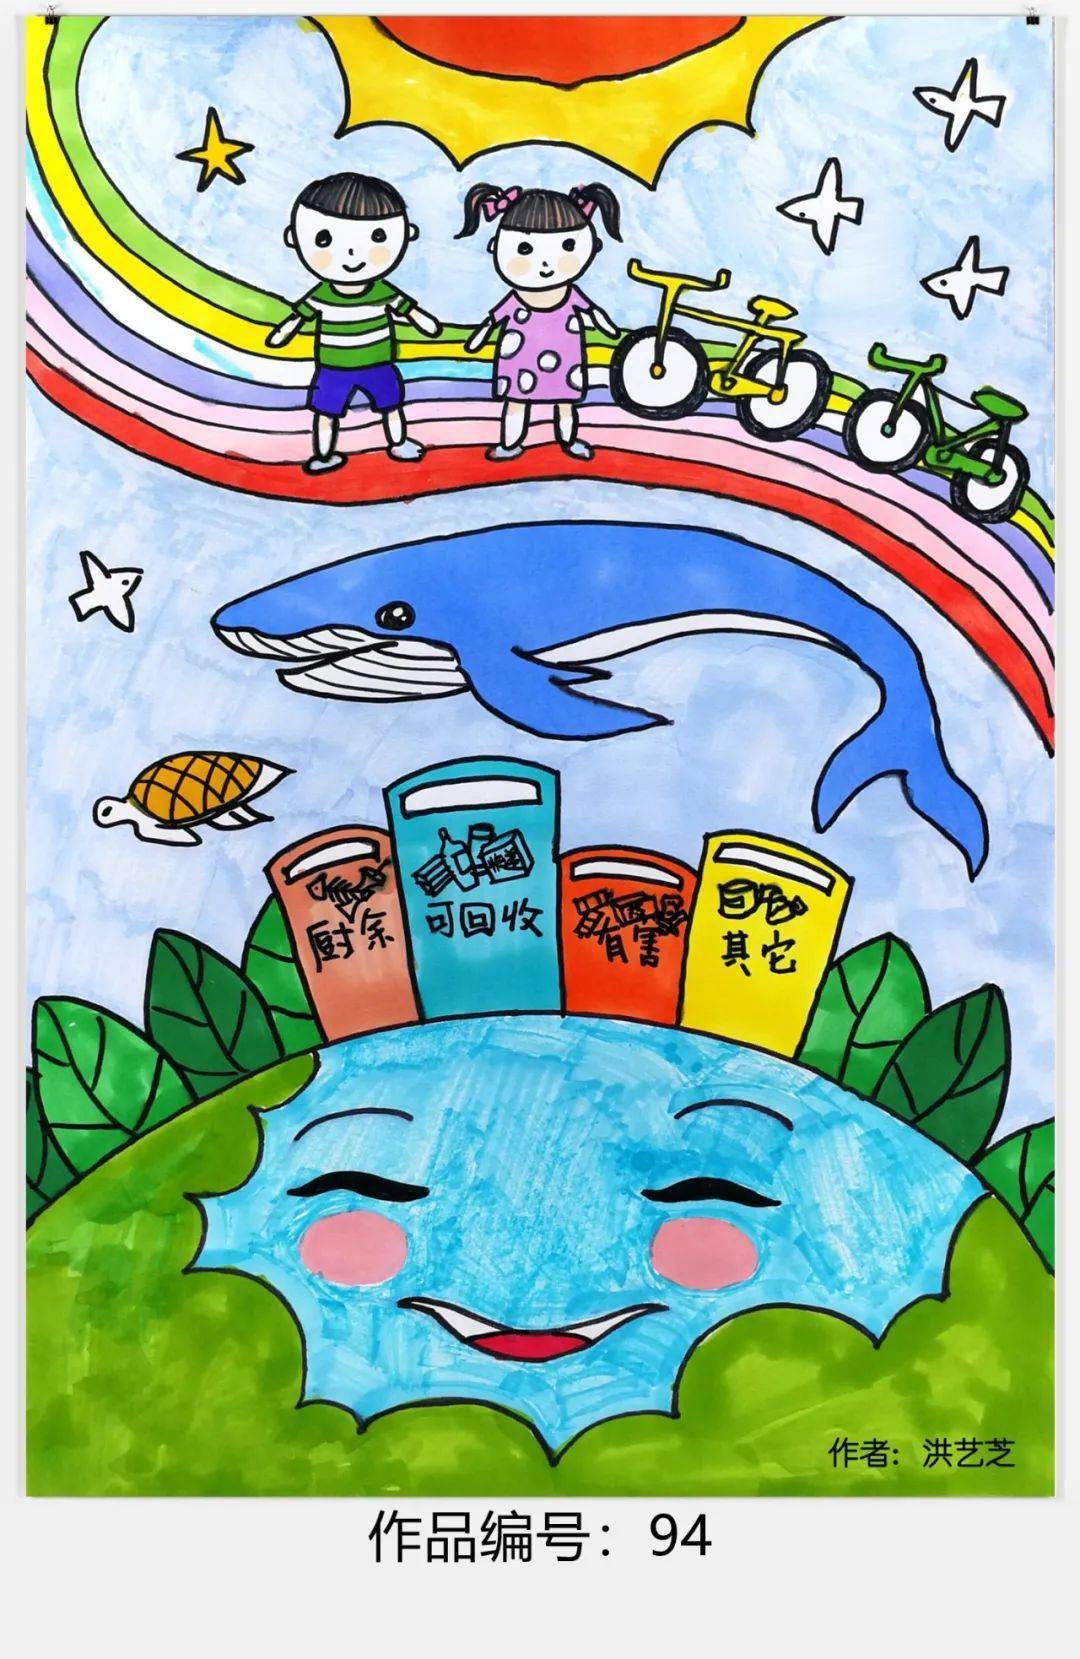 低碳生活主题画 儿童图片